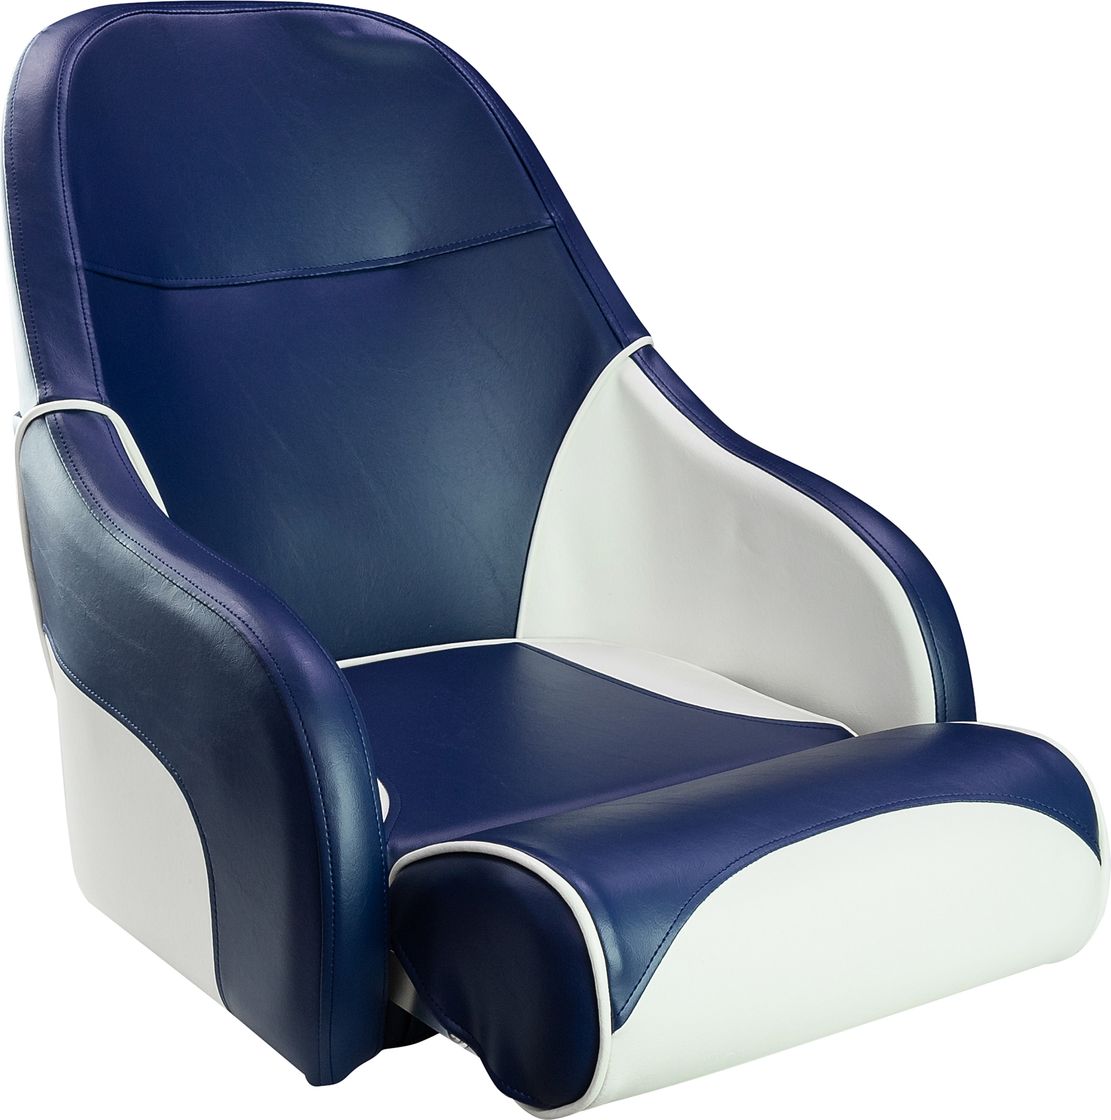 Кресло с болстером Ocean Flip Up, обивка синий/белый винил 13127WB-MR кресло с болстером ocean flip up обивка синий белый винил 13127wb mr